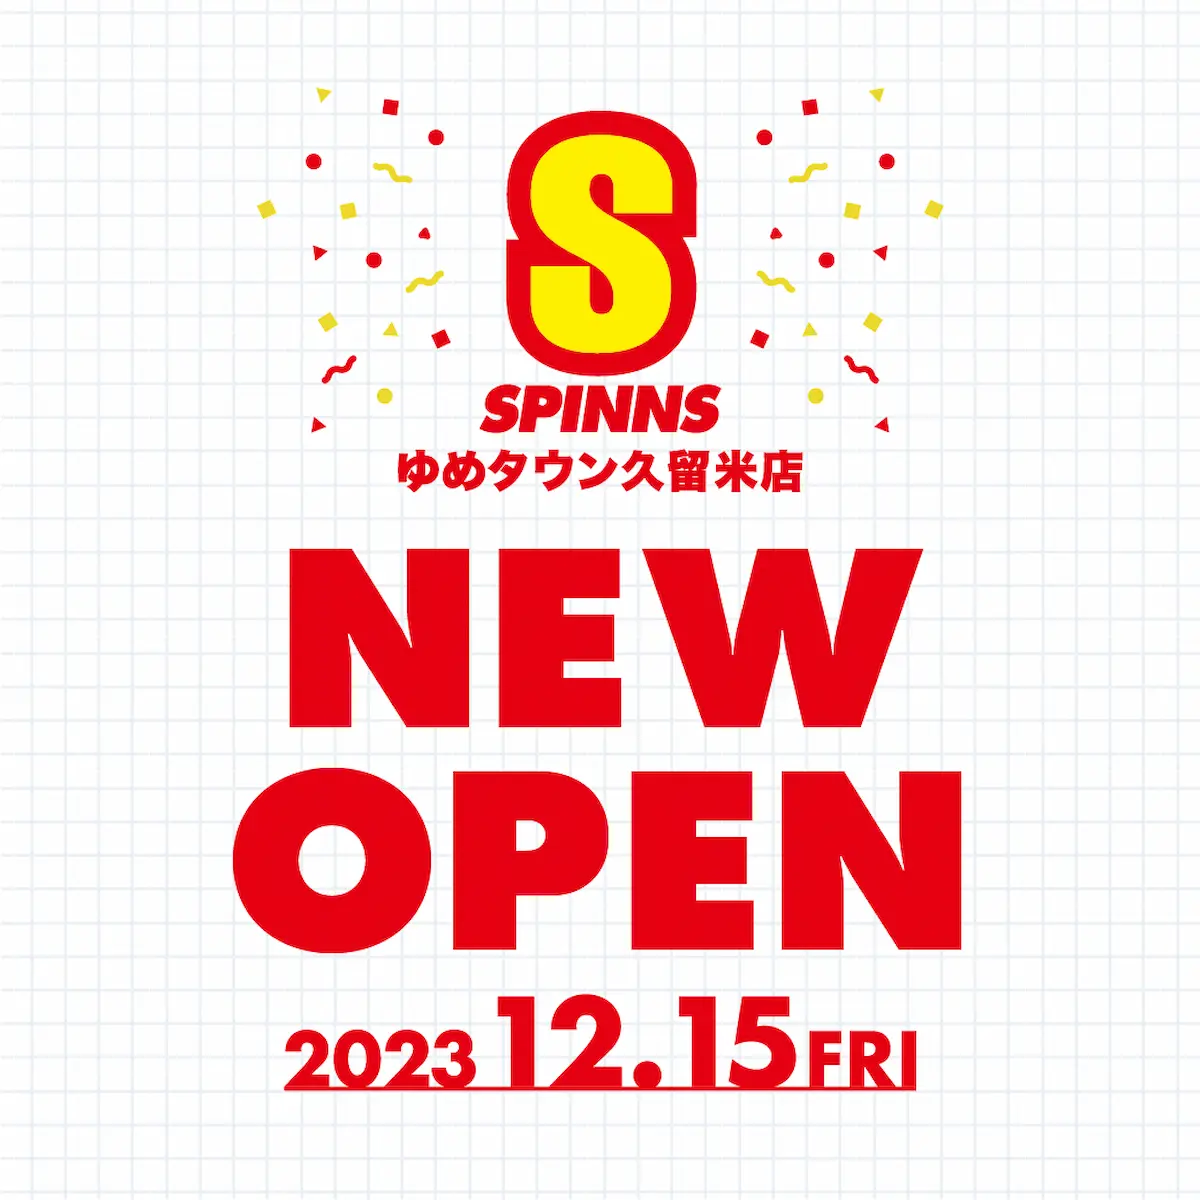 SPINNS ゆめタウン久留米店が12月15日にオープンするみたい。全国展開のアパレルショップ